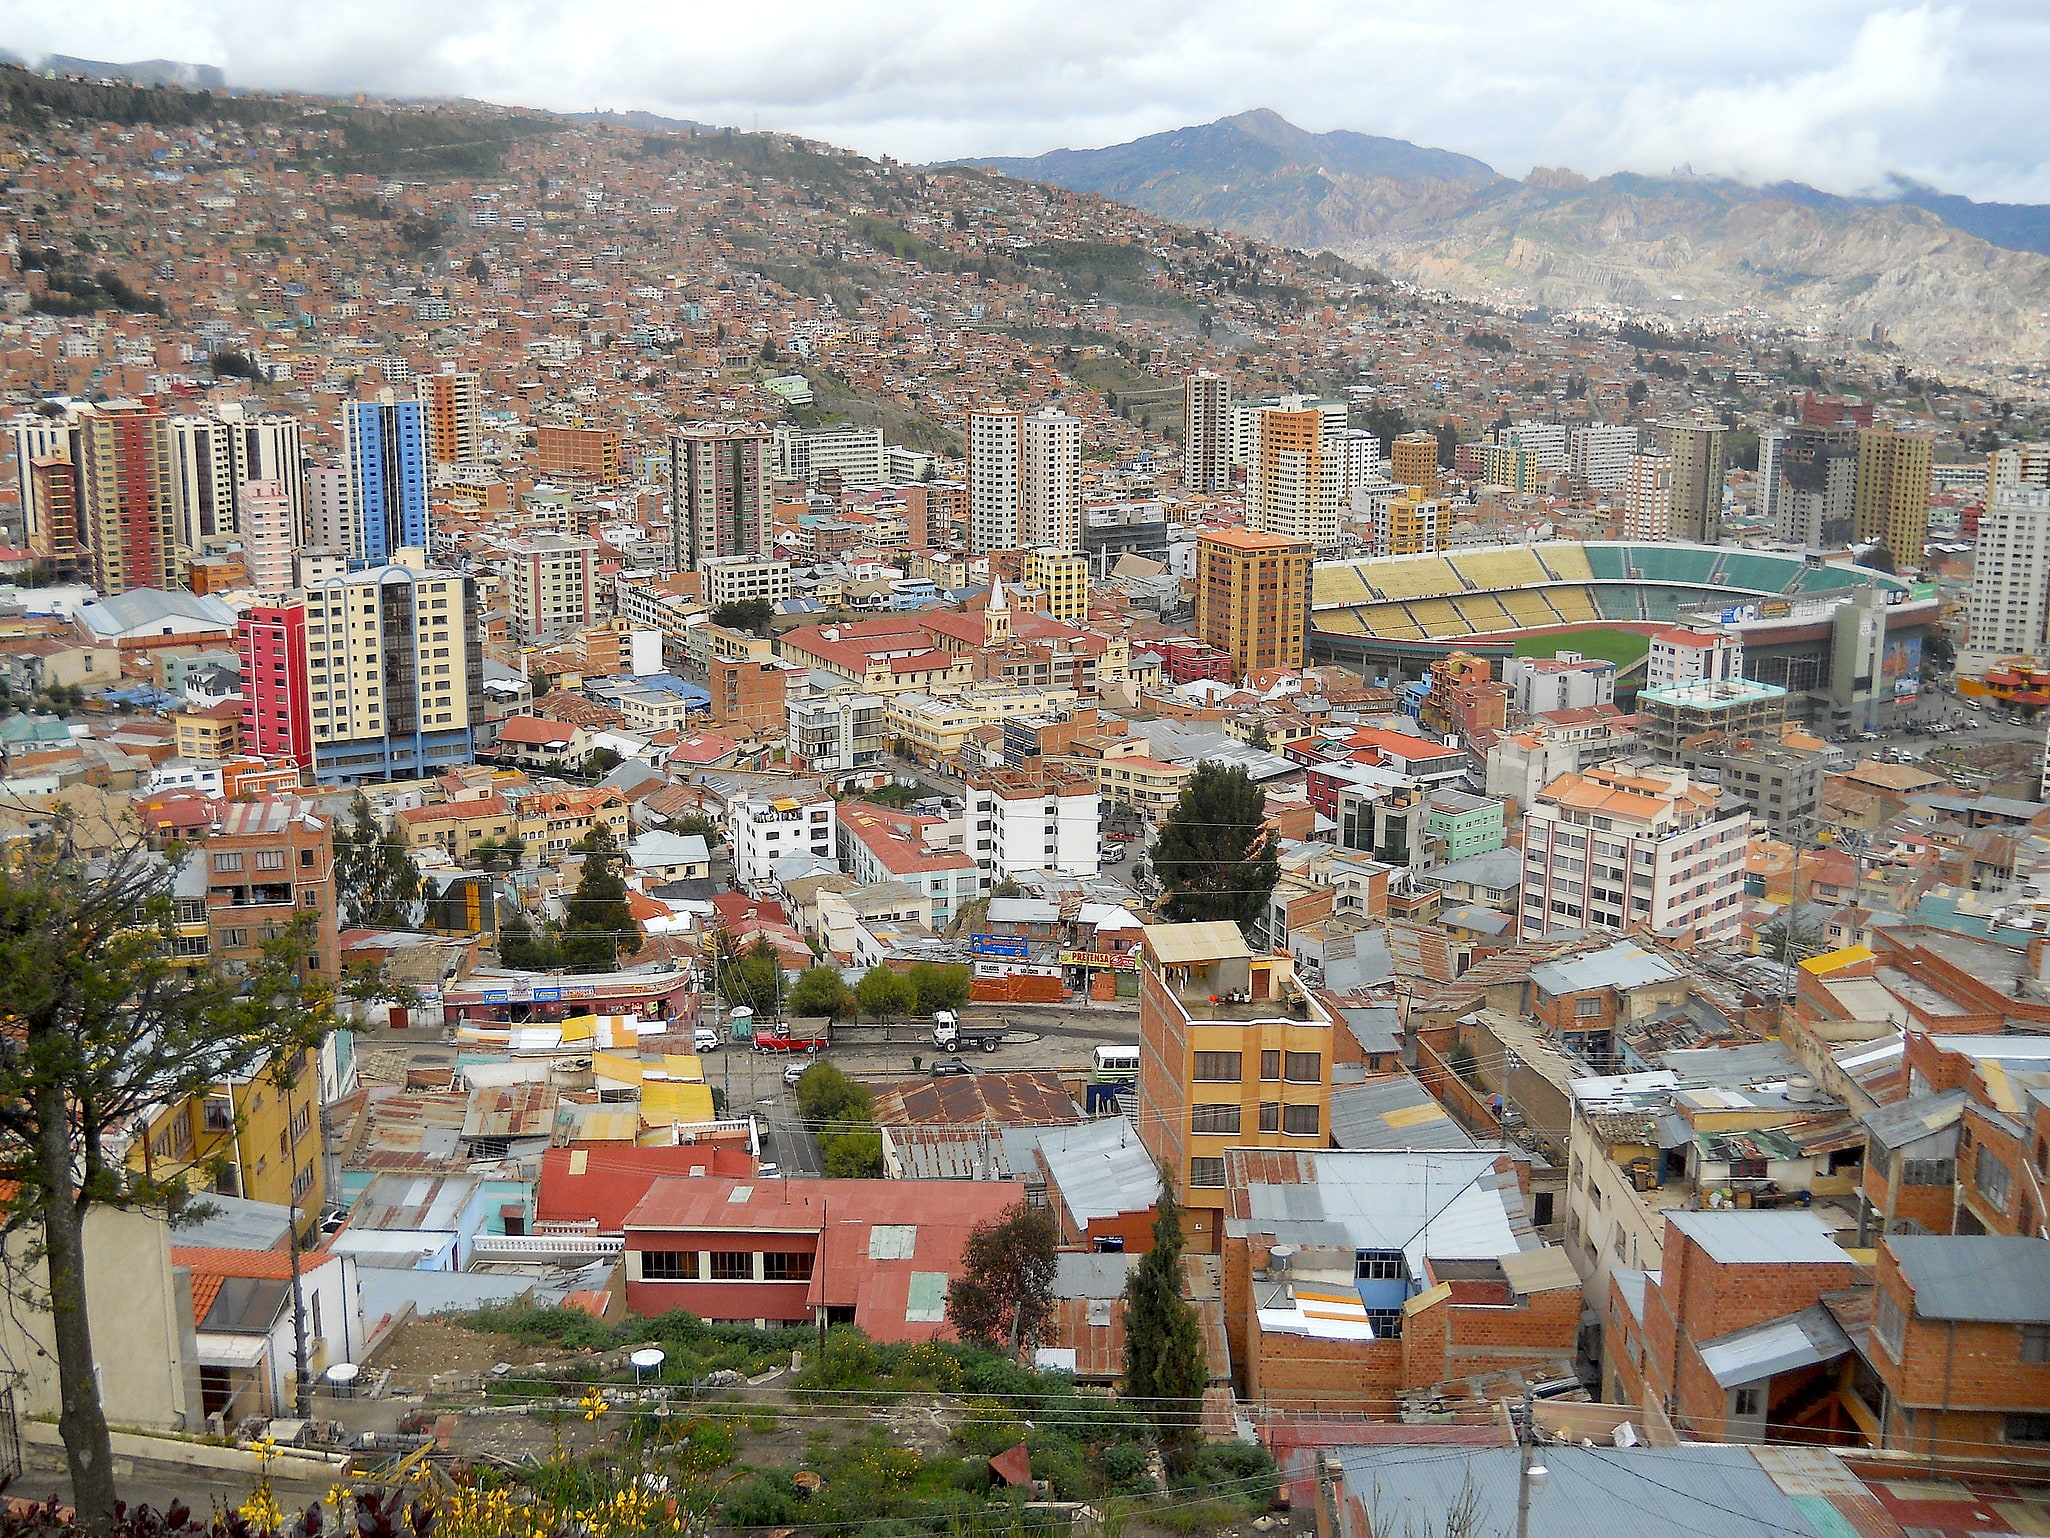 La Paz, Bolivien